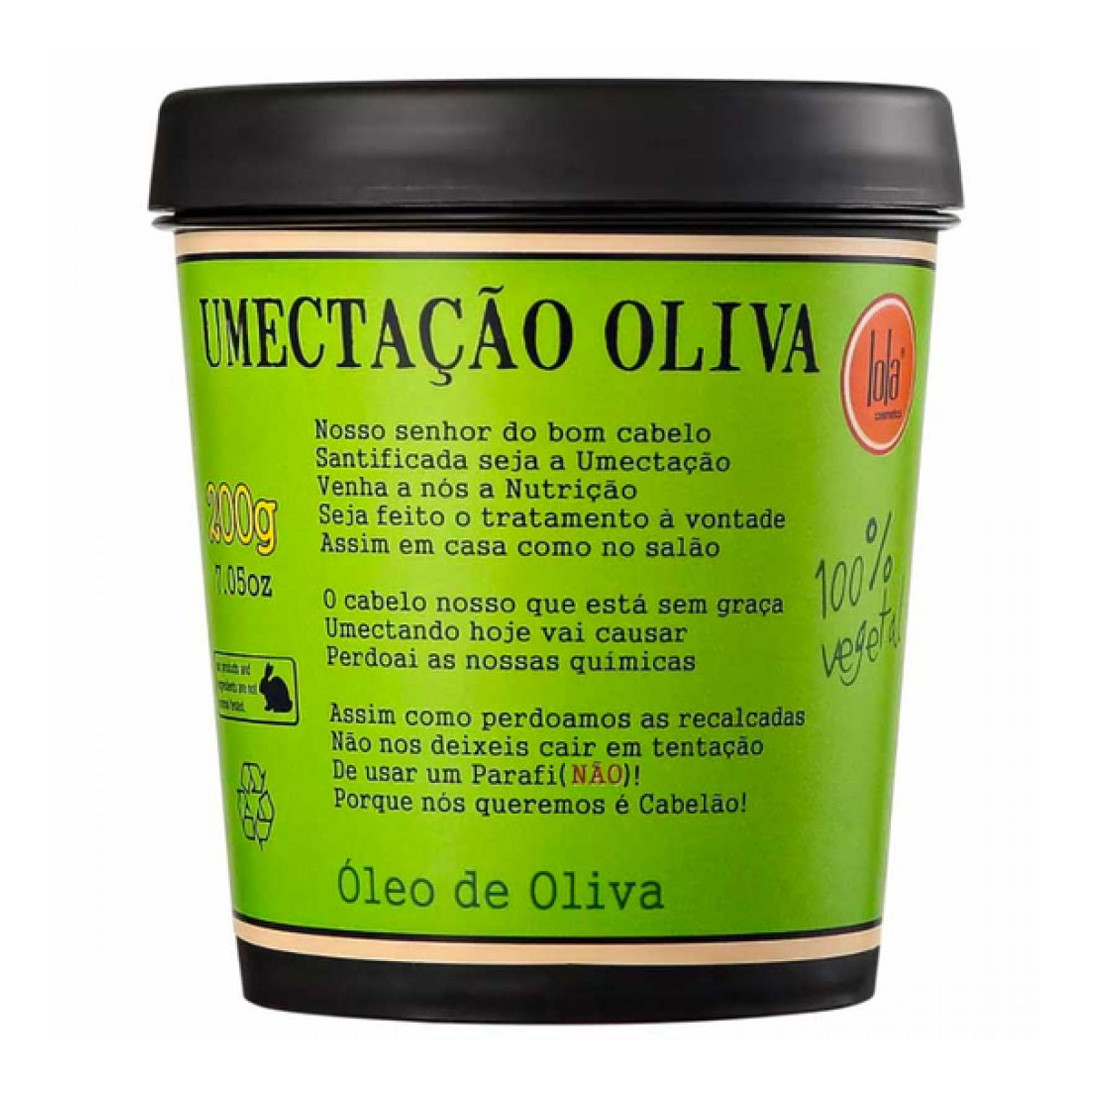 Lola Cosmetics Umectacao Oliva Mask - Маска для сухих и поврежденных волос